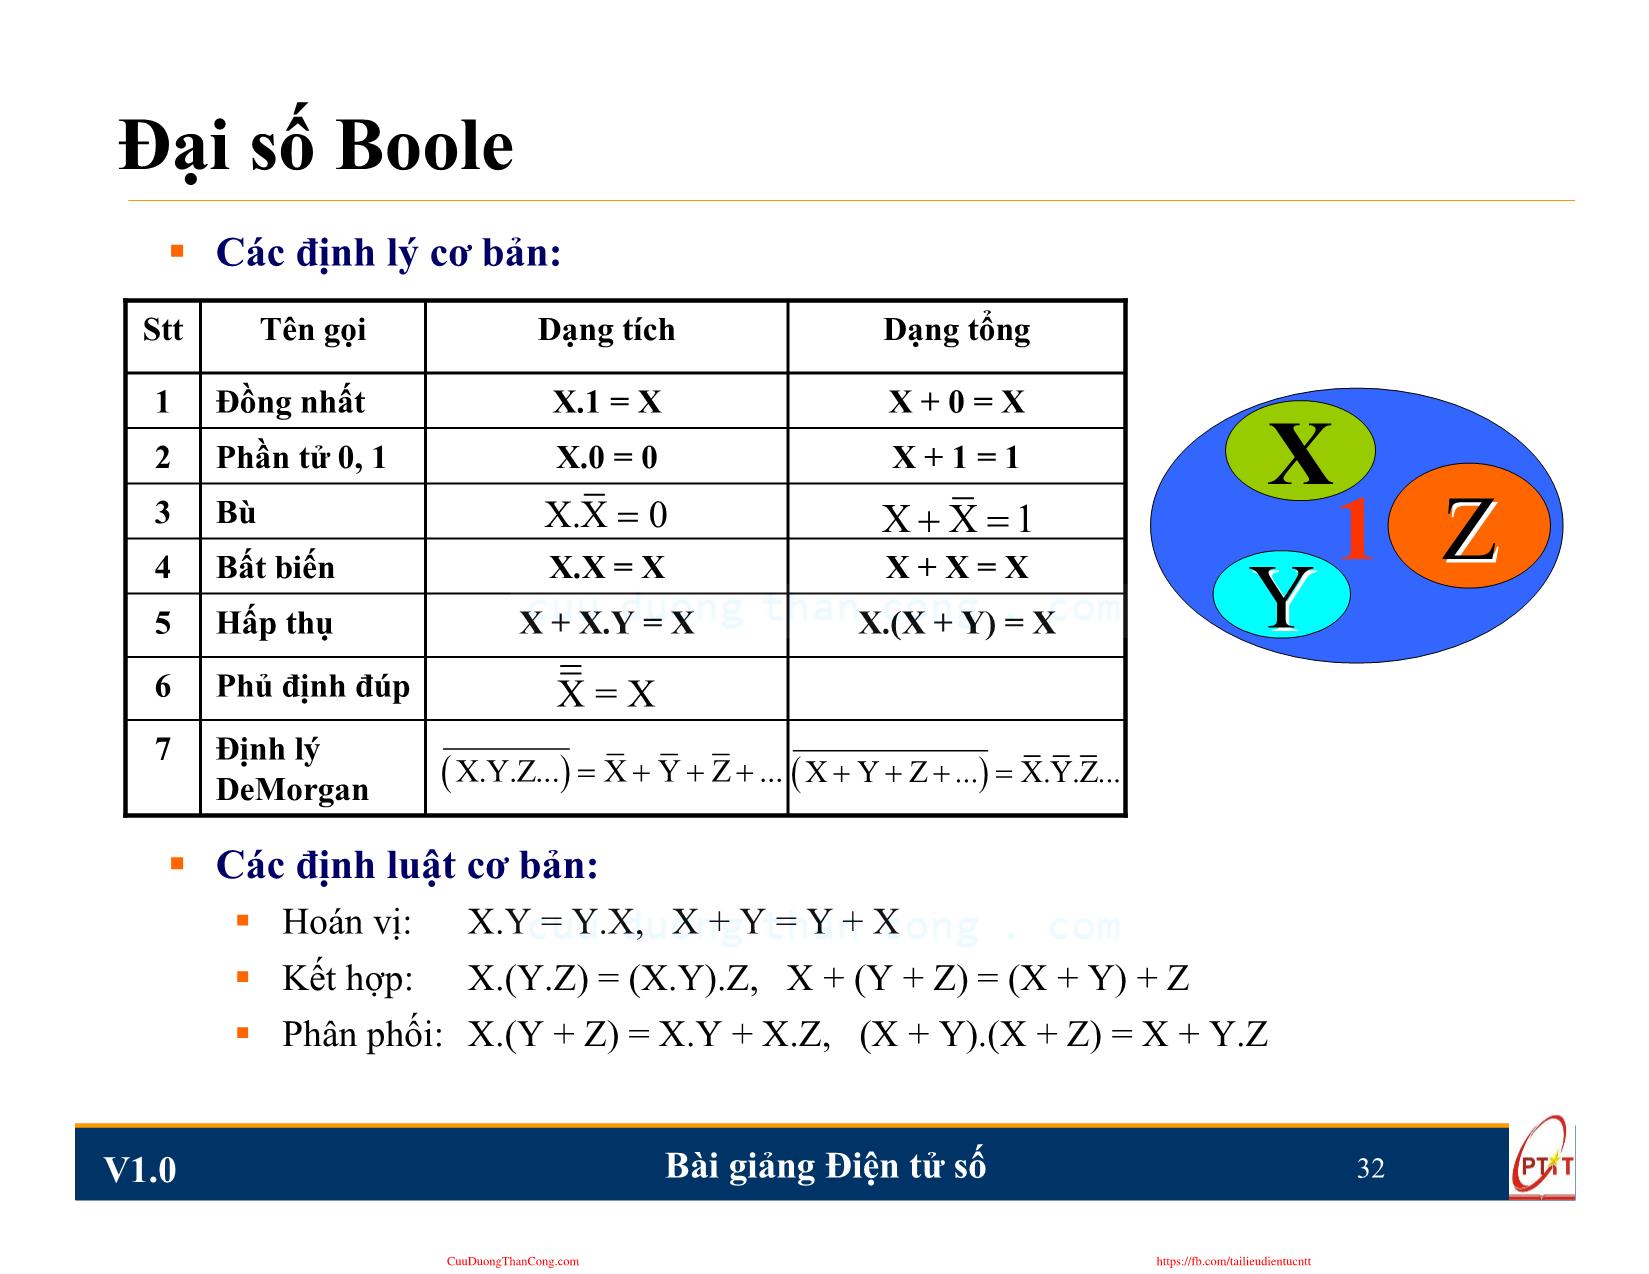 Bài giảng Điện tử số - Chương 2: Đại số Boole và các phương pháp biểu diễn hàm - Nguyễn Trung Hiếu trang 3